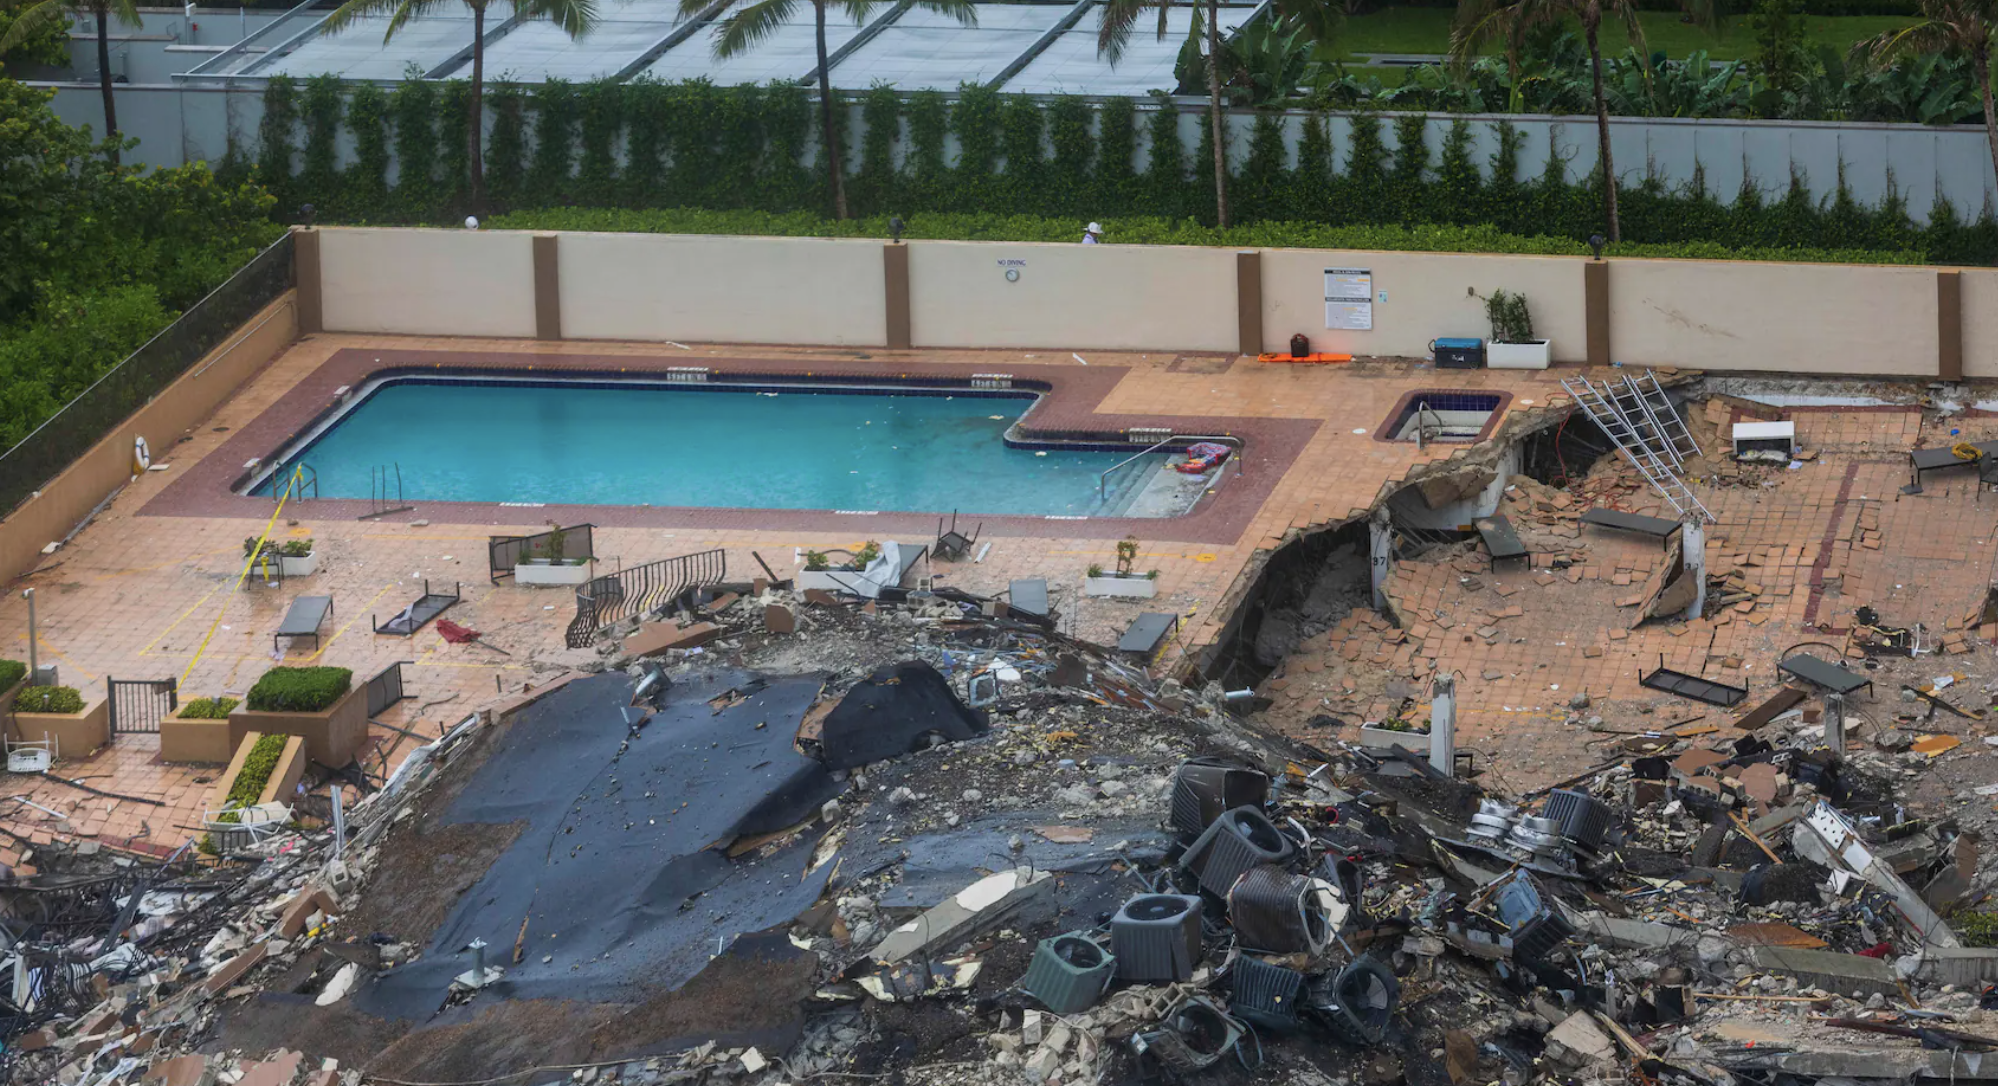 Según relatos de los testigos, una sección de la piscina colapsó de manera repentina minutos previos al derrumbe parcial del Champlain Towers. (Foto Prensa Libre: The Washington Post)